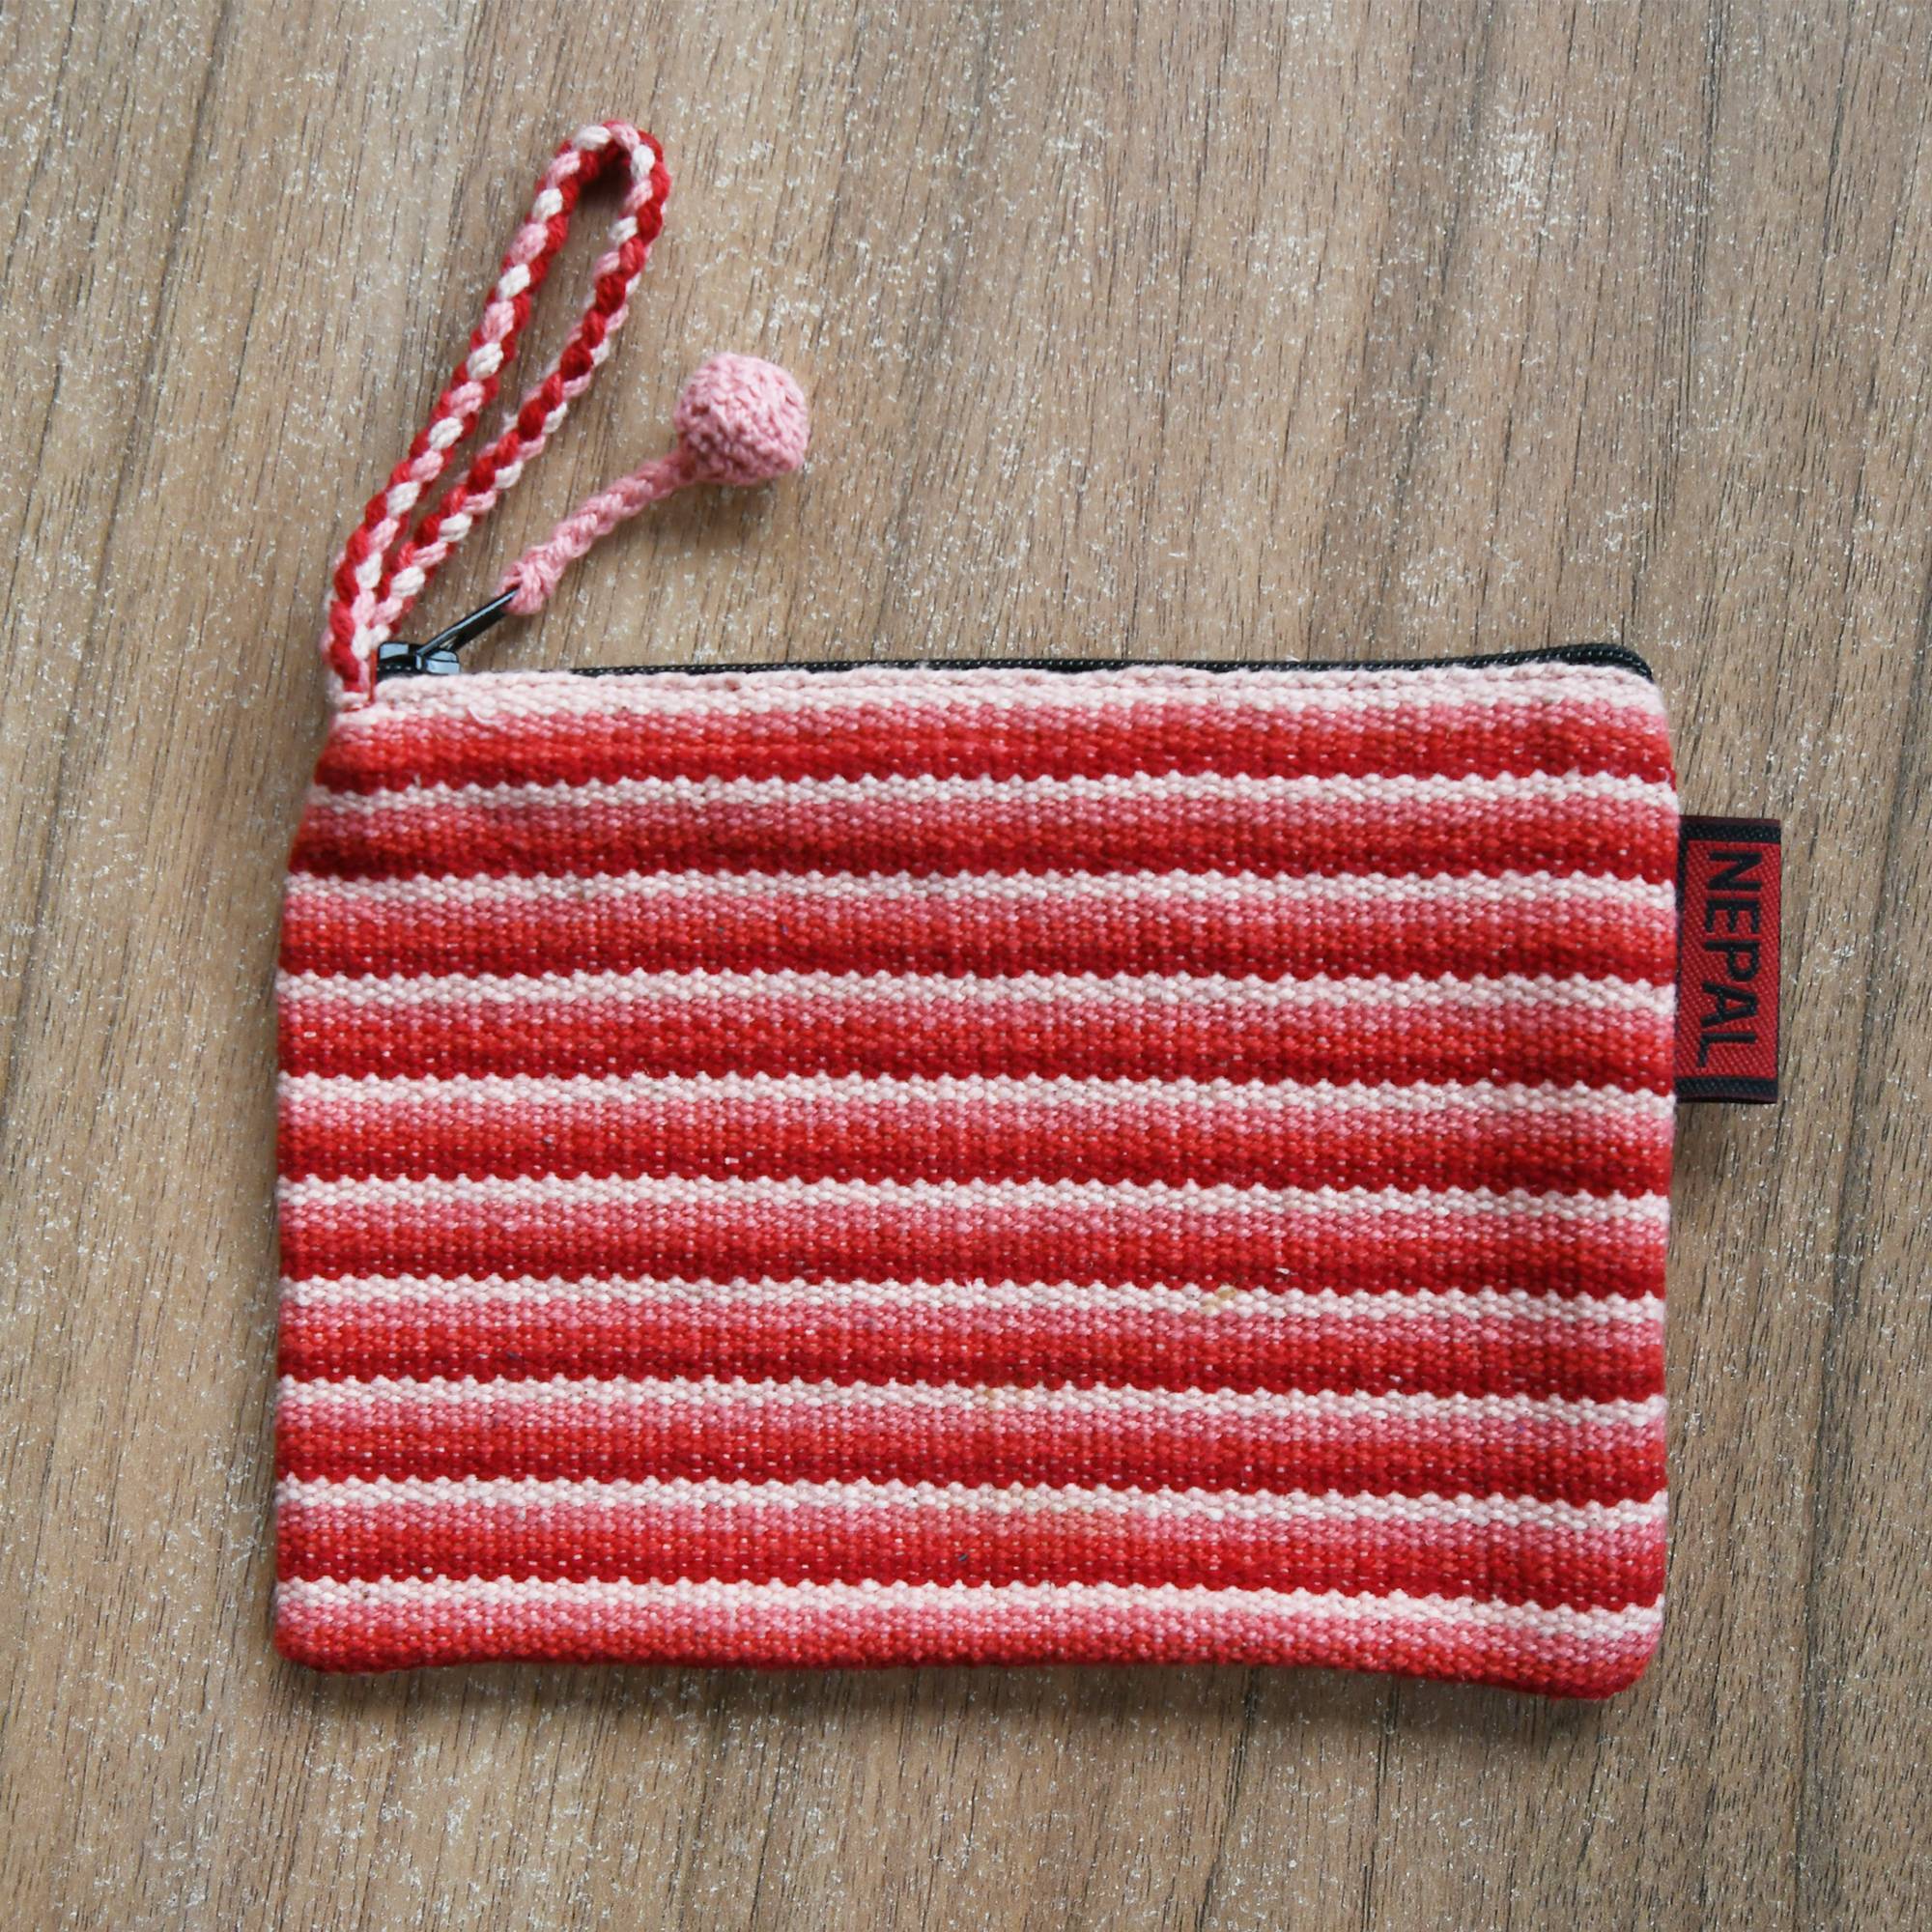 Handloomed Cotton WSDO Fair Trade Mini Bag - Coral